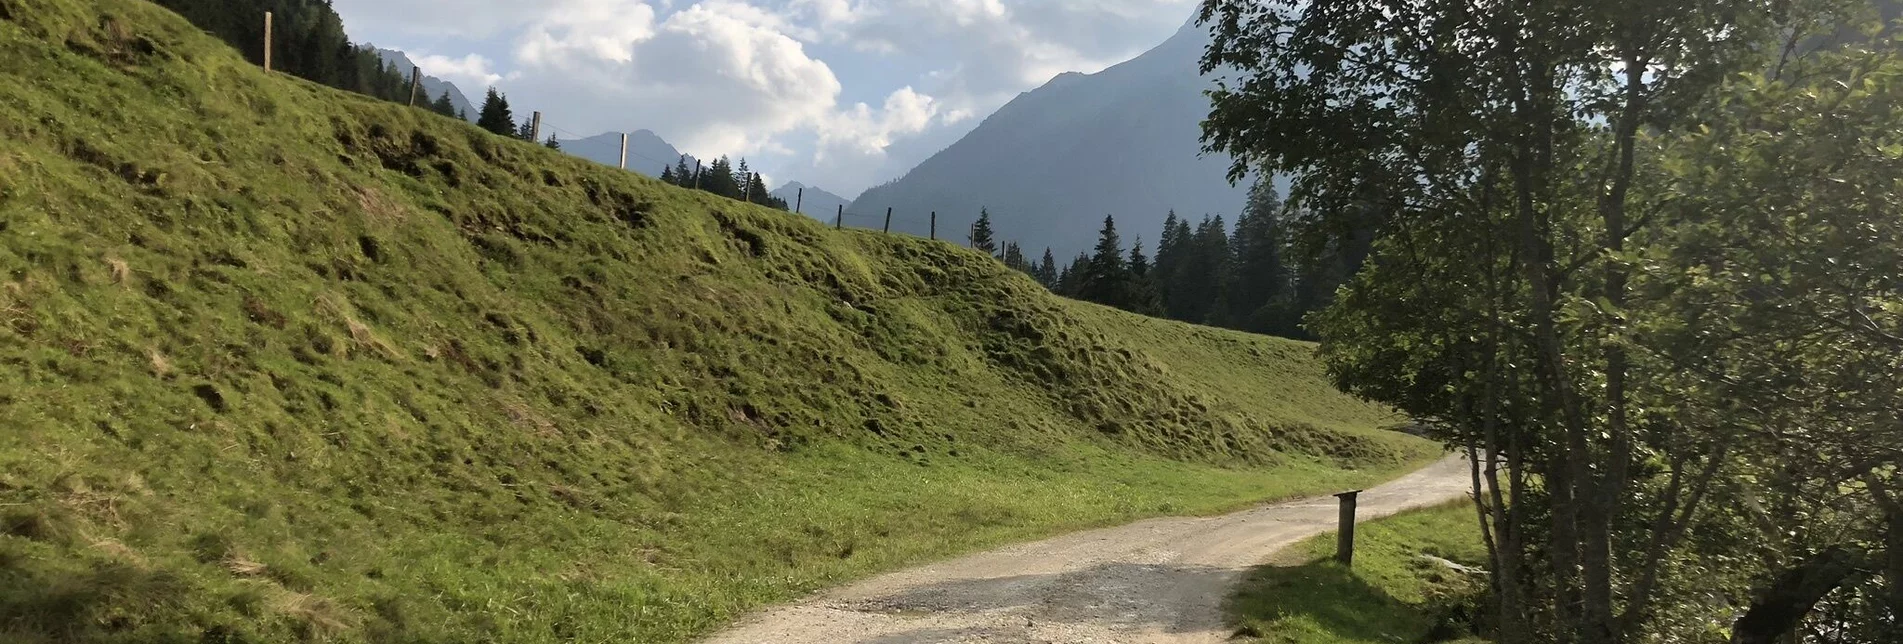 Hiking route "Secrets of water" - Touren-Impression #1 | © Erlebnisregion Schladming-Dachstein